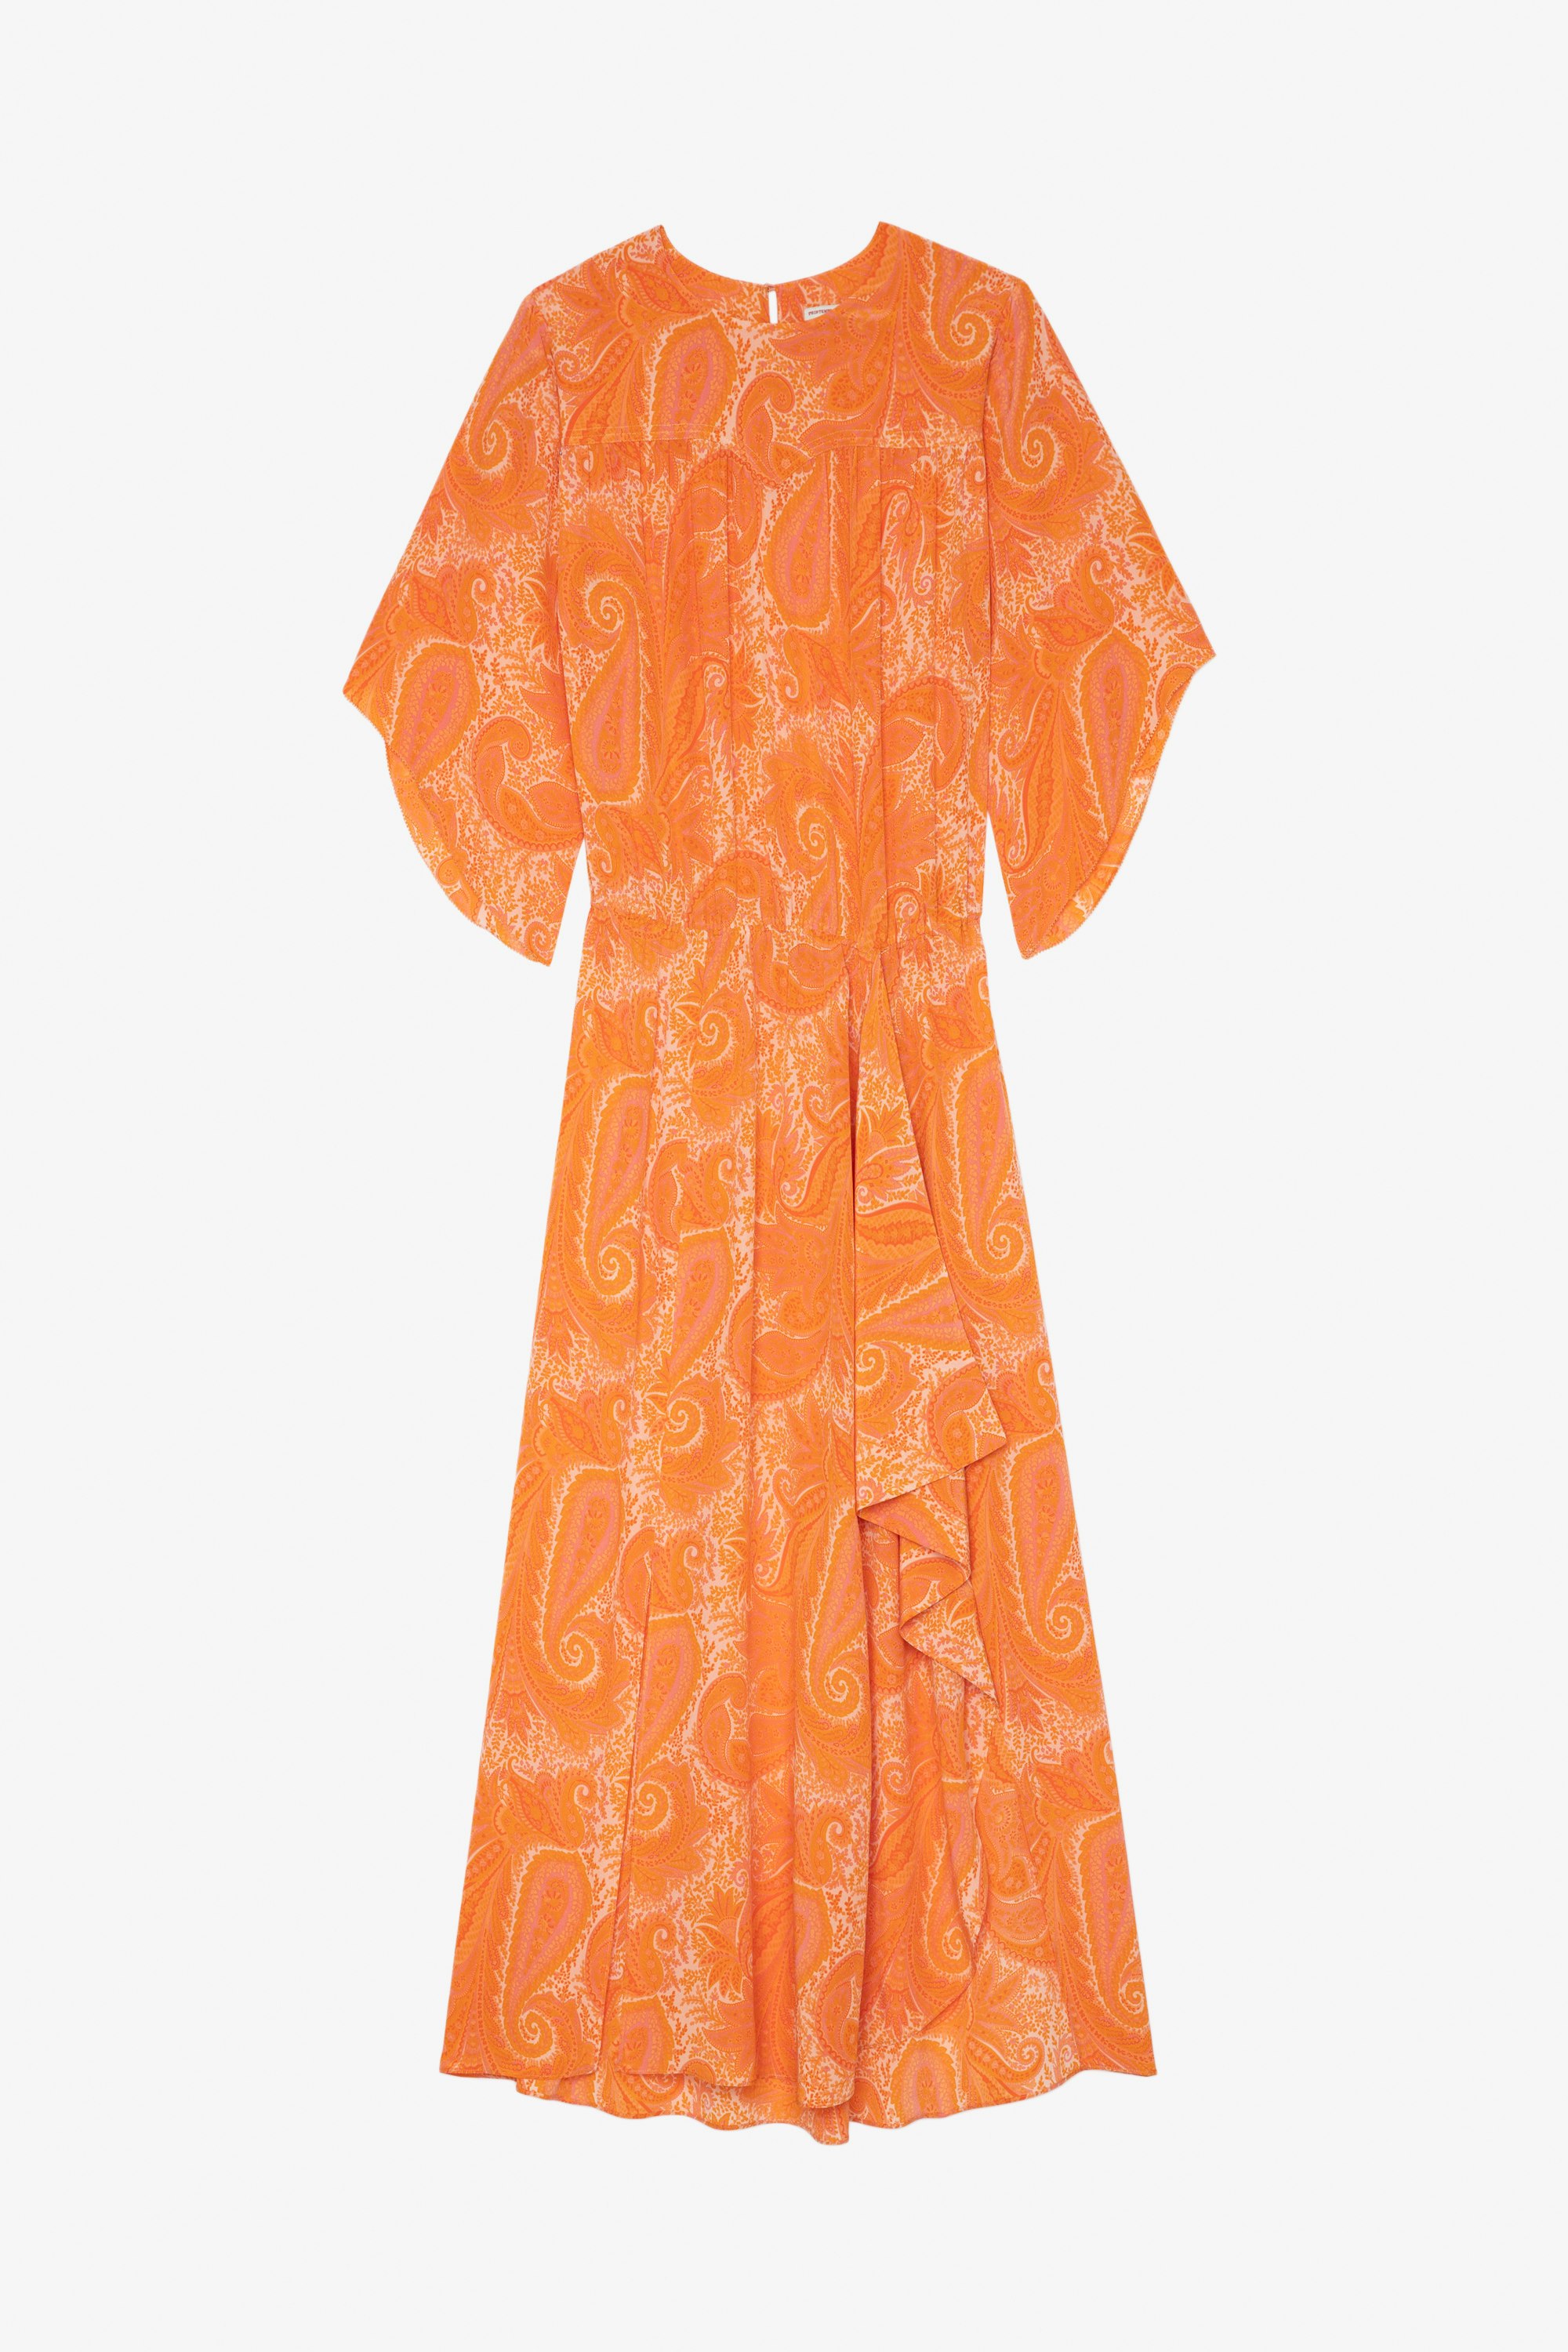 Vestido Rusty Vestido largo drapeado y asimétrico naranja de seda para mujer con estampado paisley y cinturón